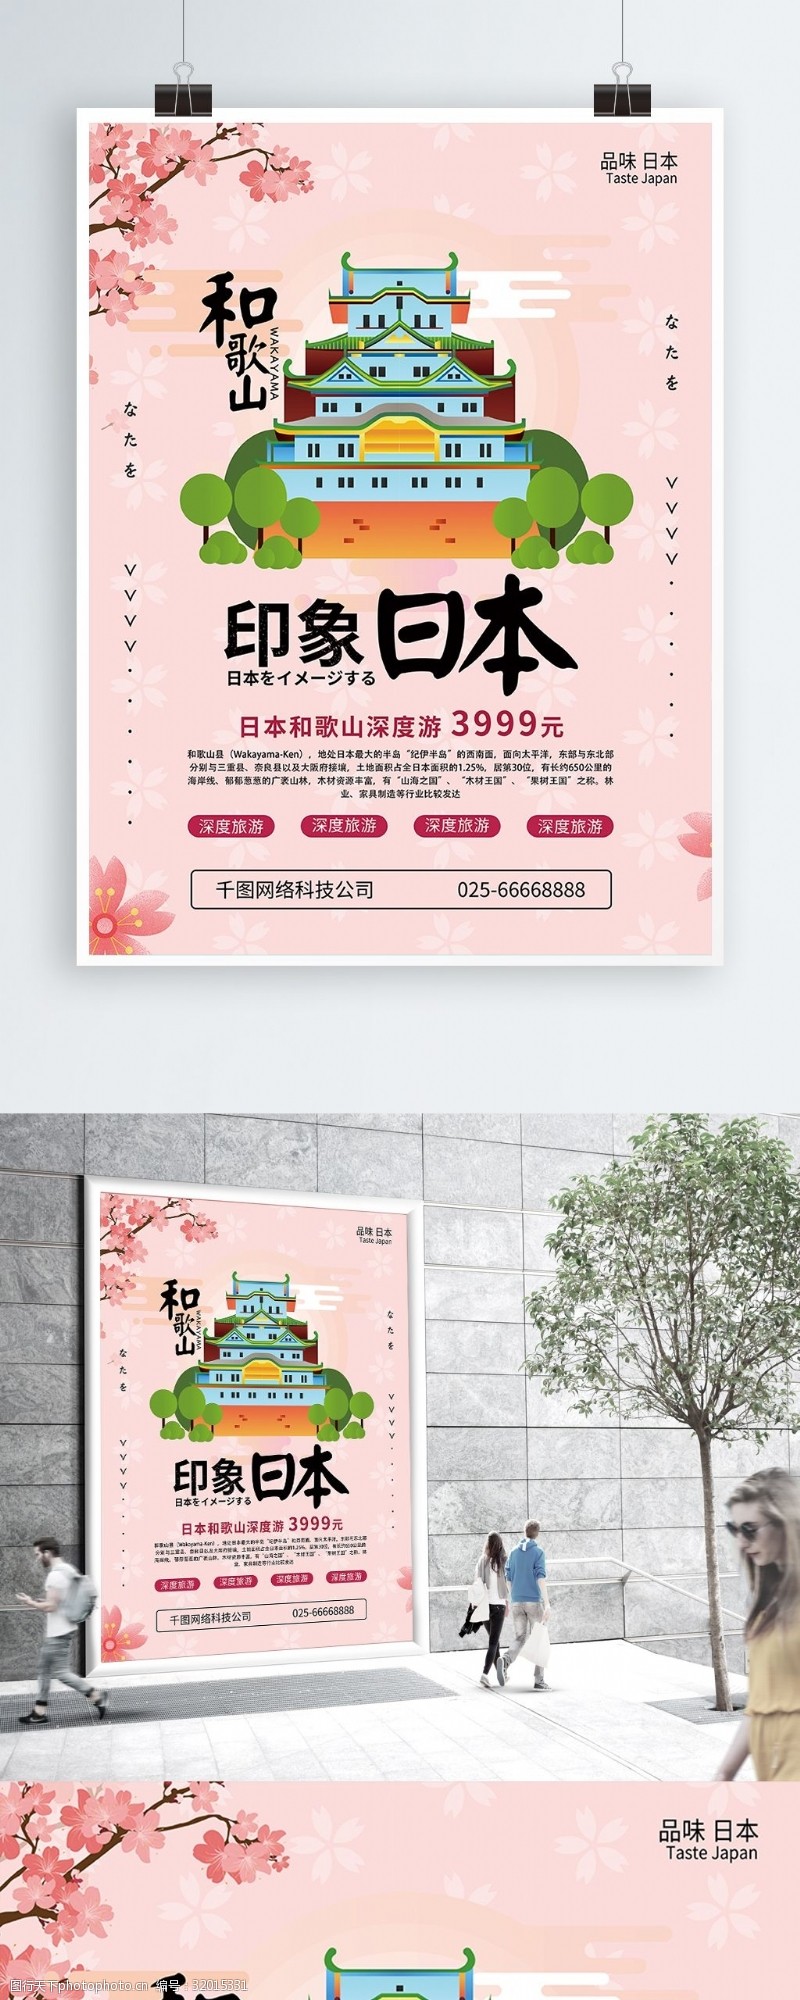 日系和风日本风景旅游宣传海报